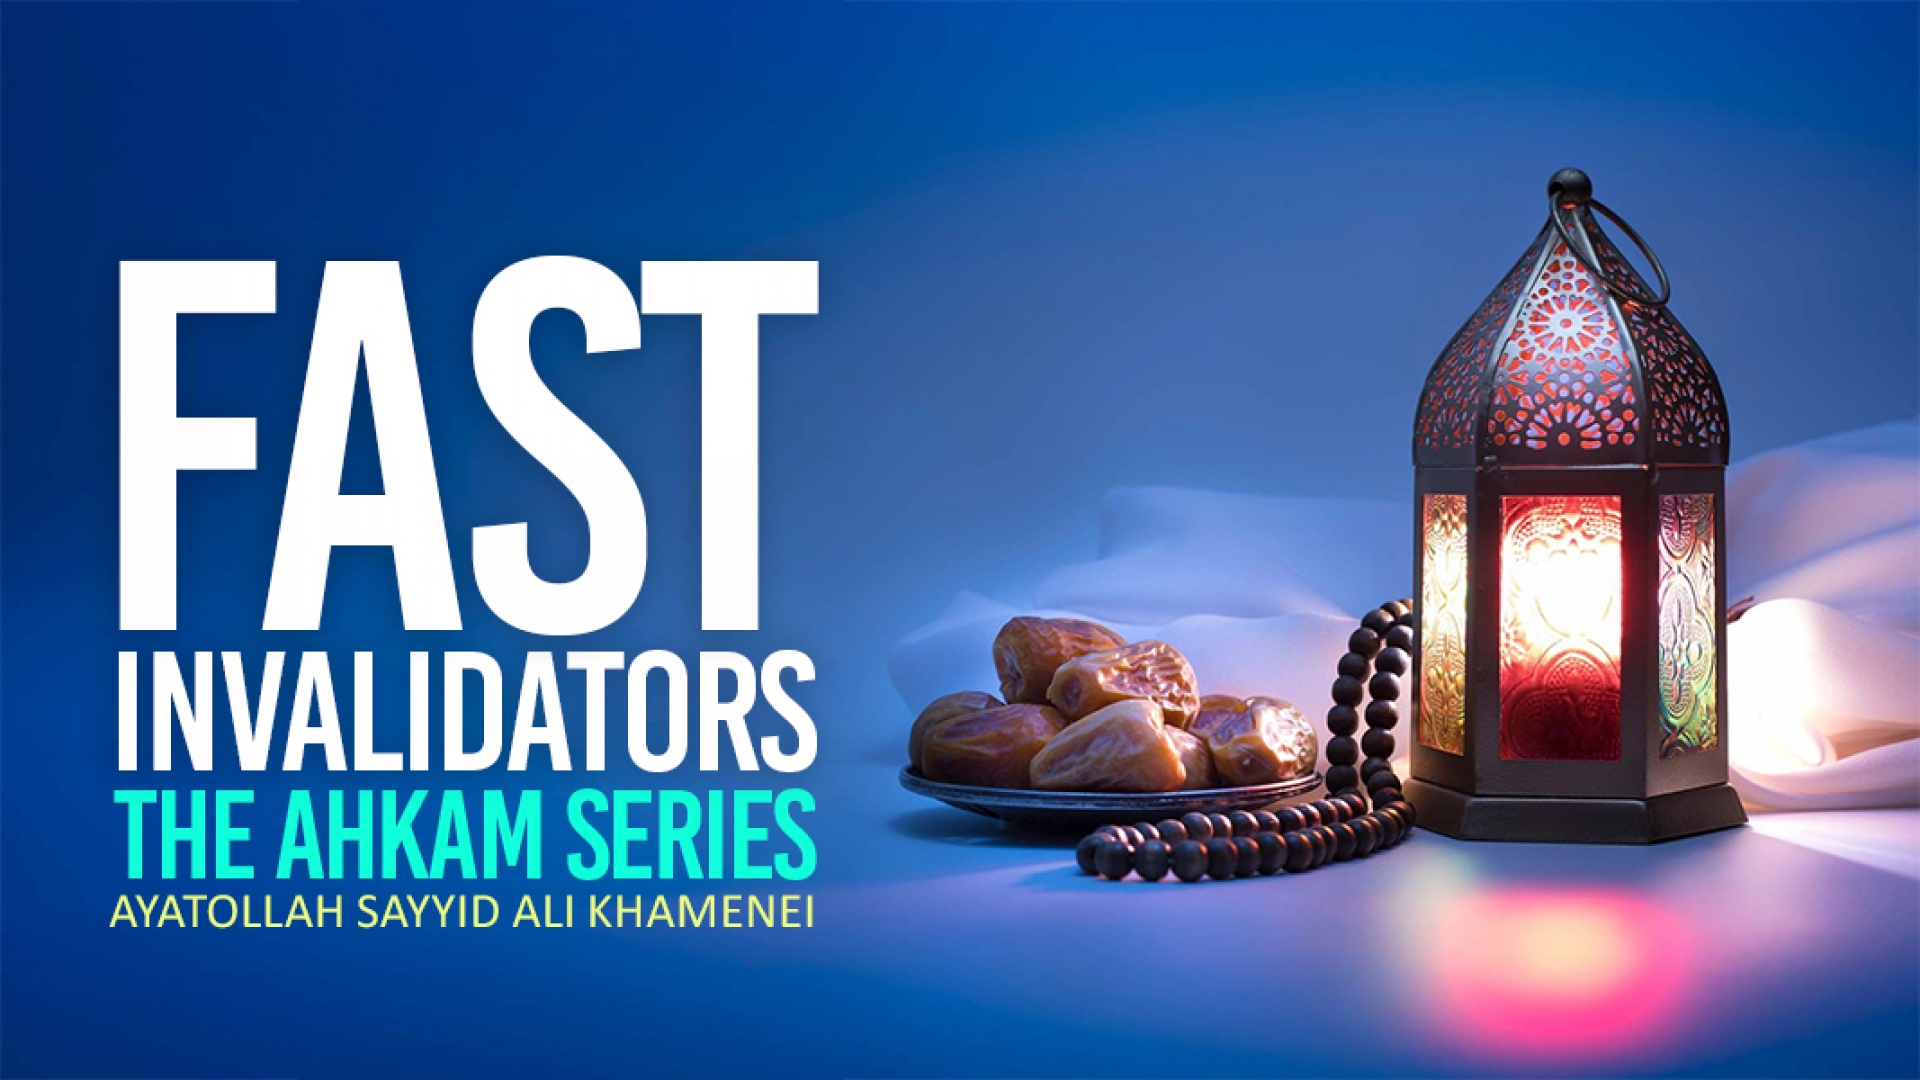 Fast invalidators | The Ahkam Series | Ayatollah Sayyid Ali Khamenei | English